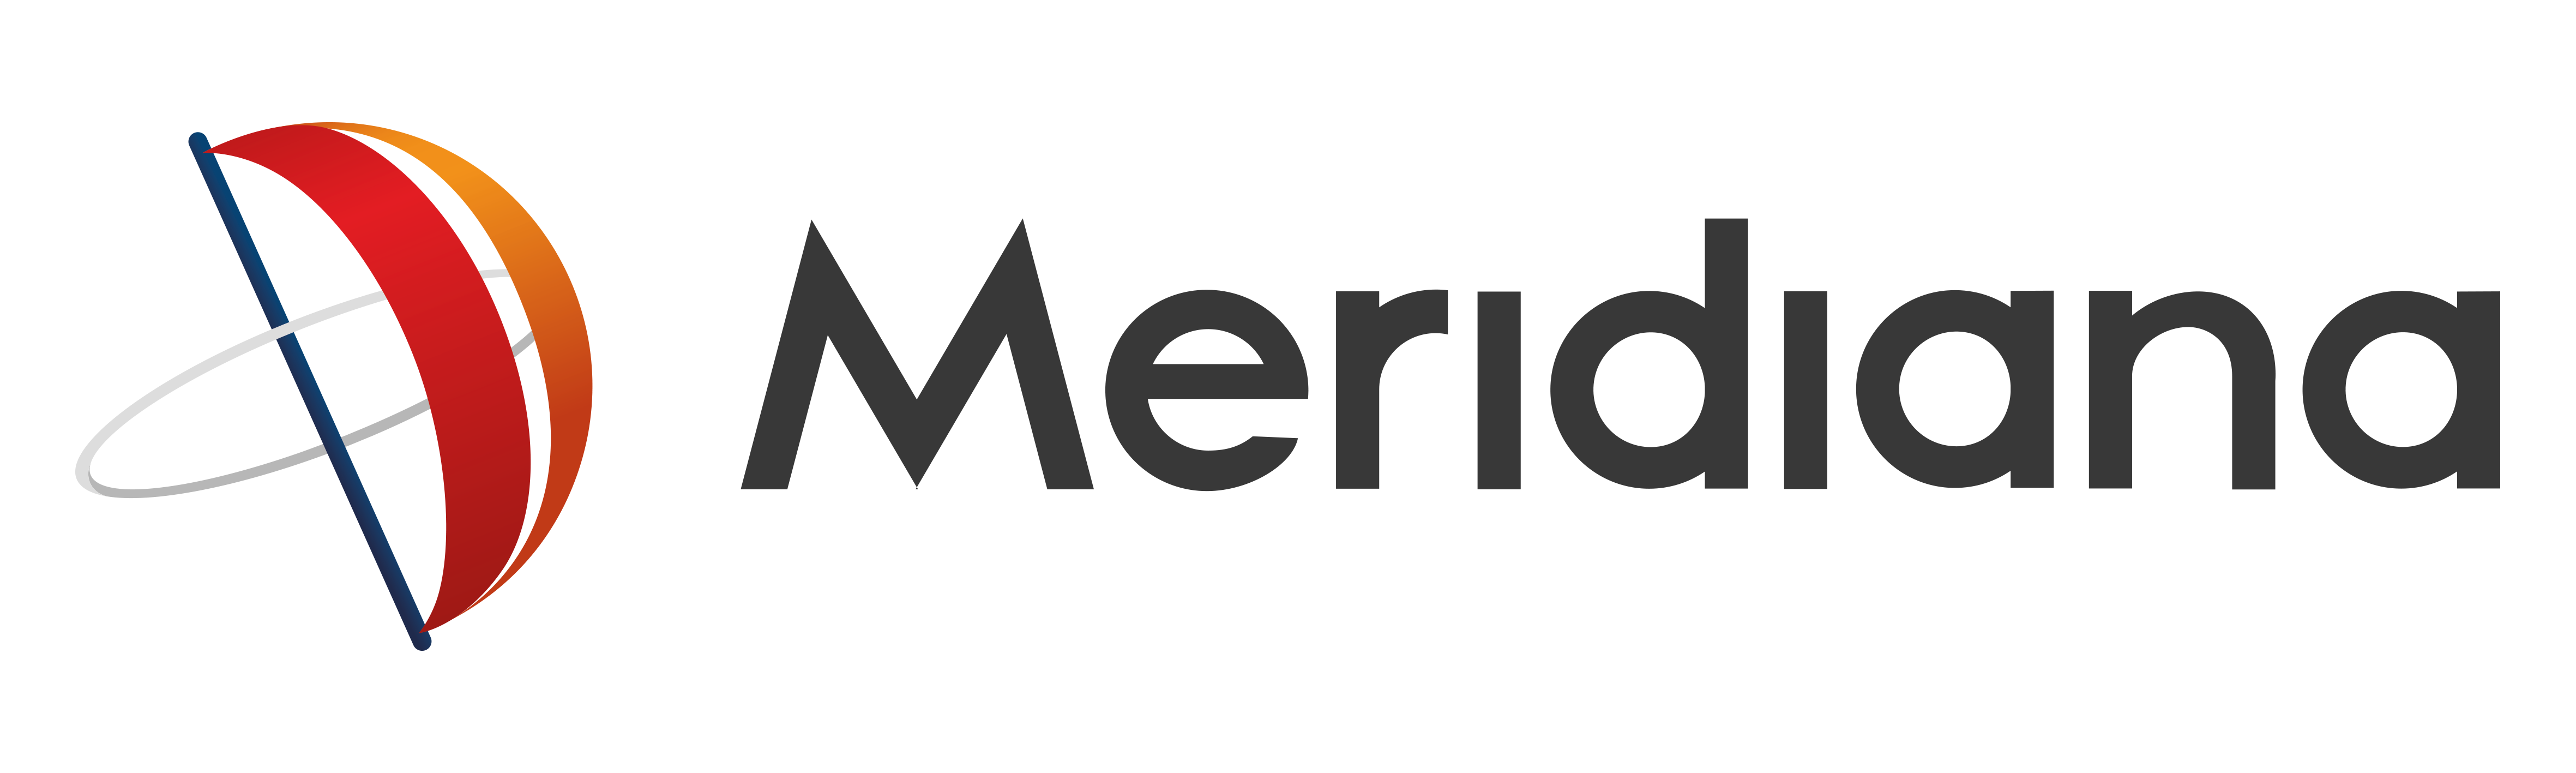 Logotip de  Meridiana